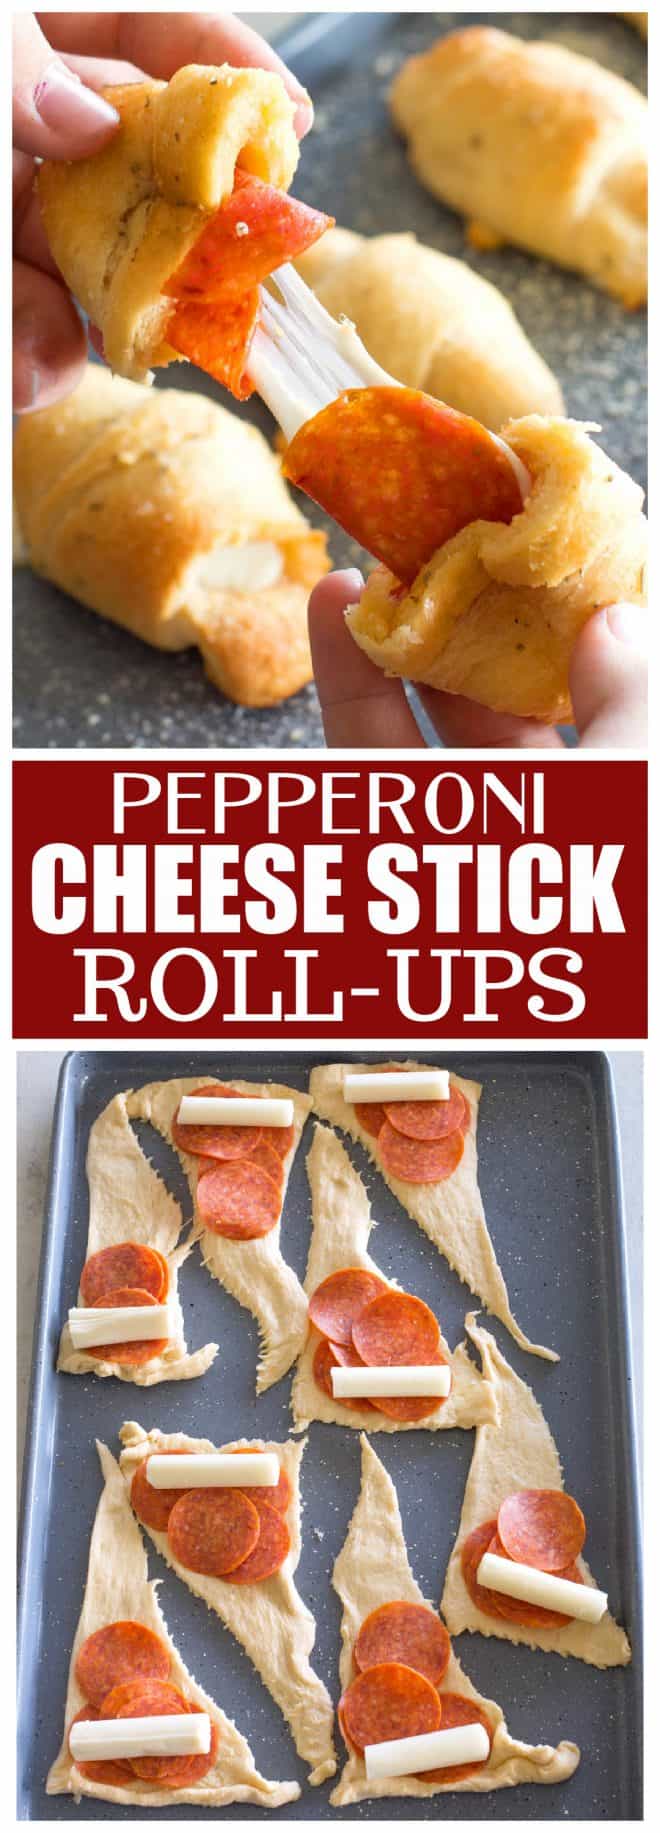 Estes rolos de queijo Pepperoni são ótimos para crianças e para agradar ao público.  #pepperoni #cheese #stick #rollups #fácil #receita